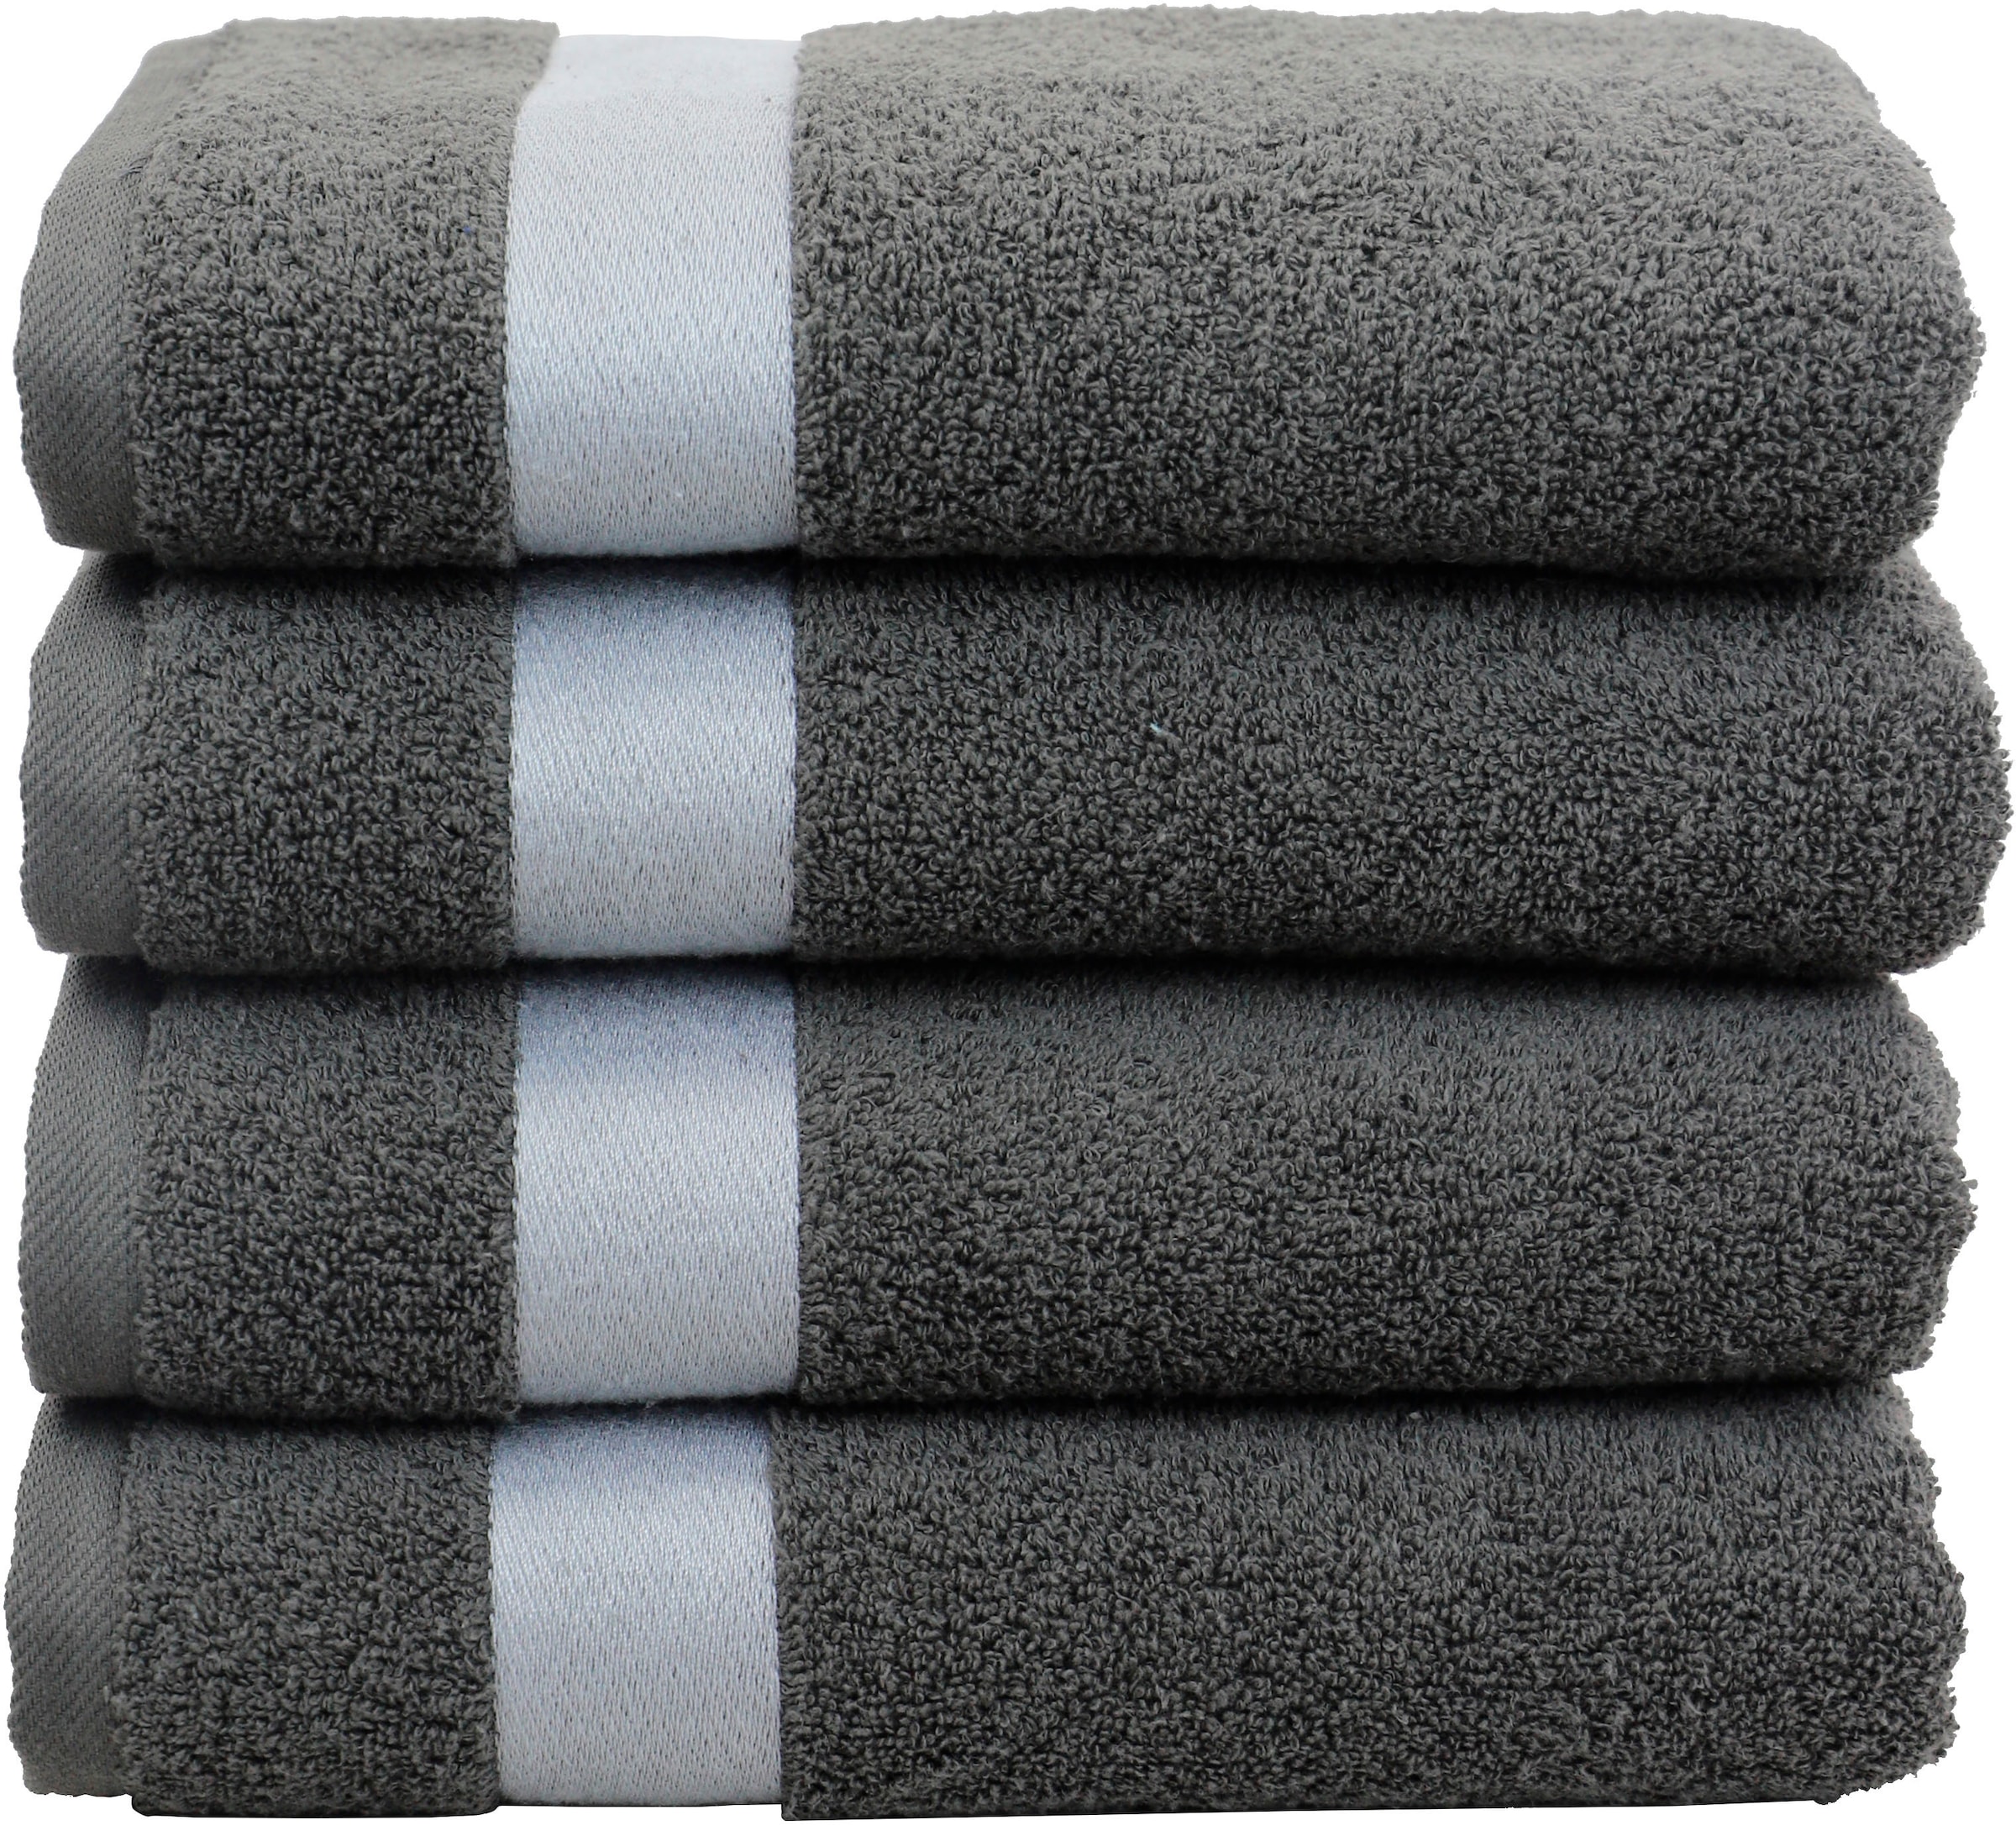 Handtuch-Sets ▷ Handtücher im Set online kaufen | BAUR